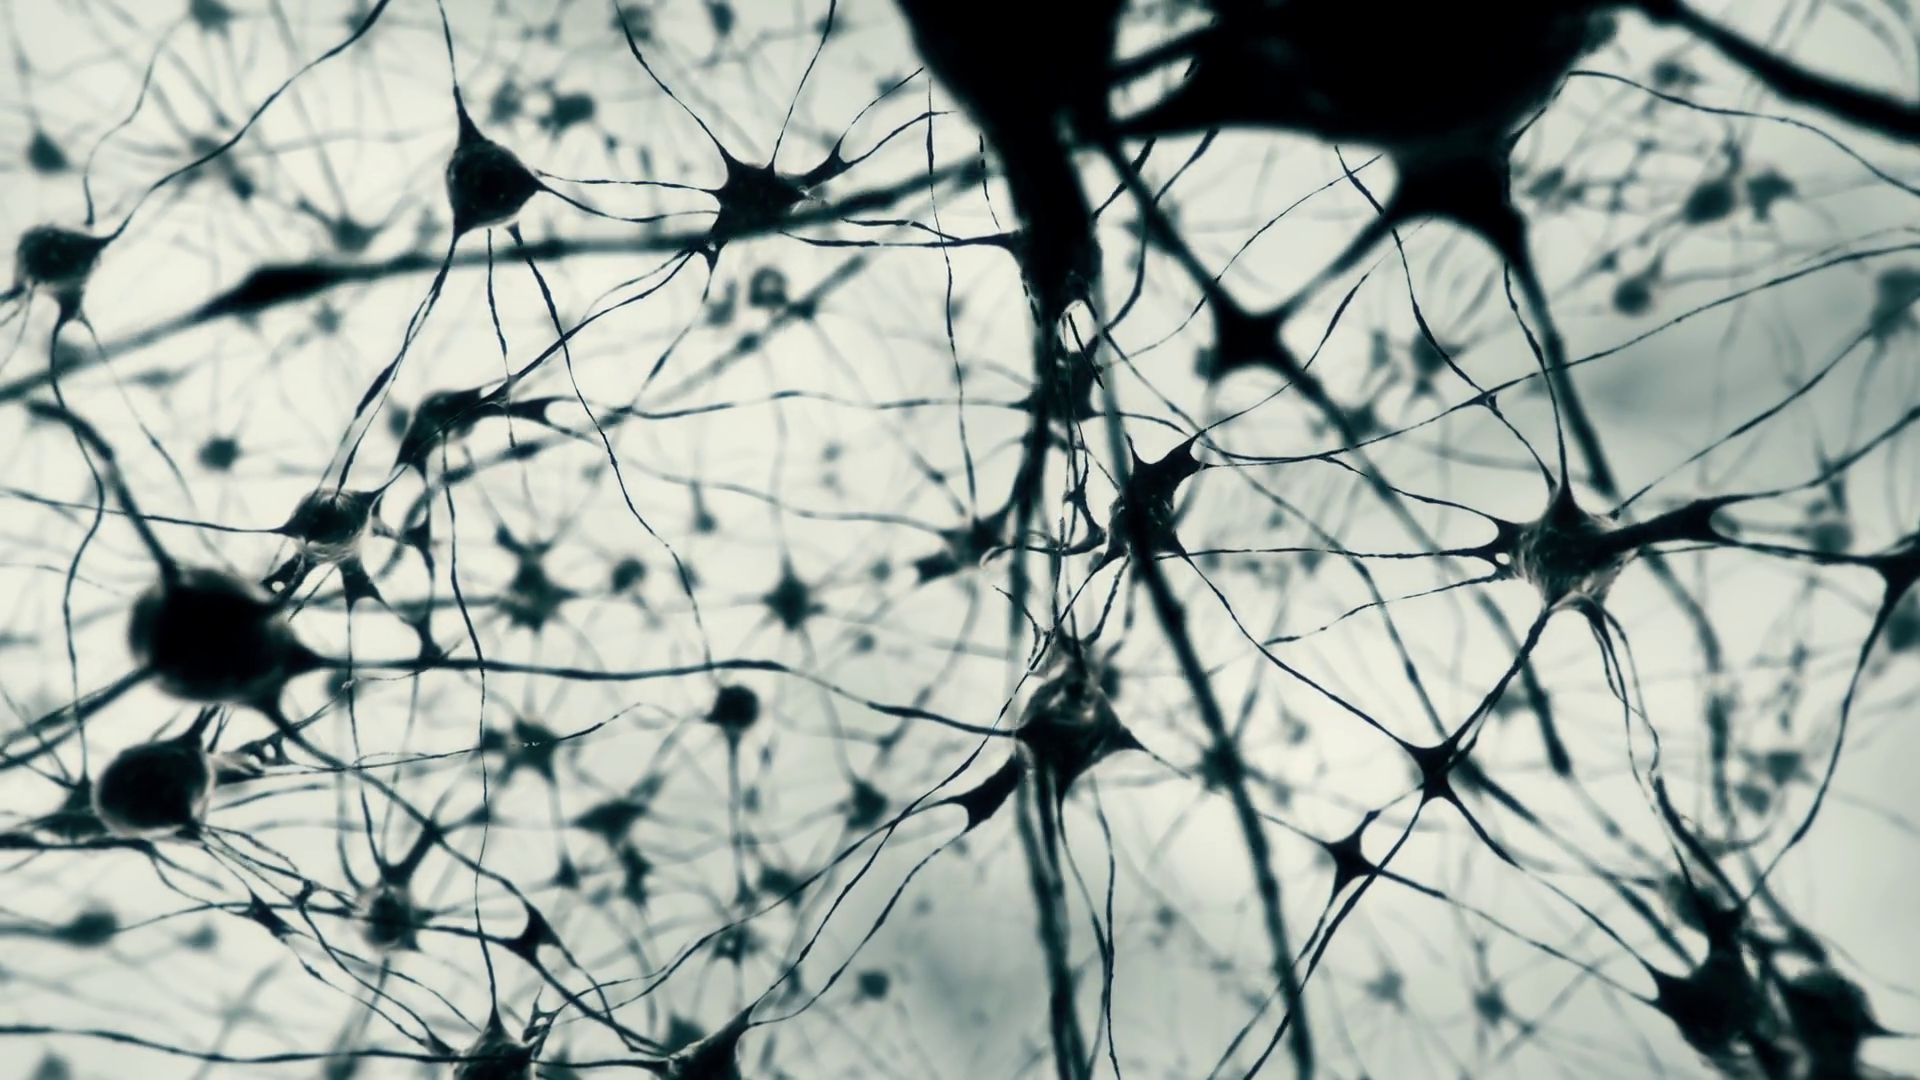 Разрушенная нервная система. Нейроны и нейронные связи. Черная клетка. Паутина нейронов. Разрушение нейронов.